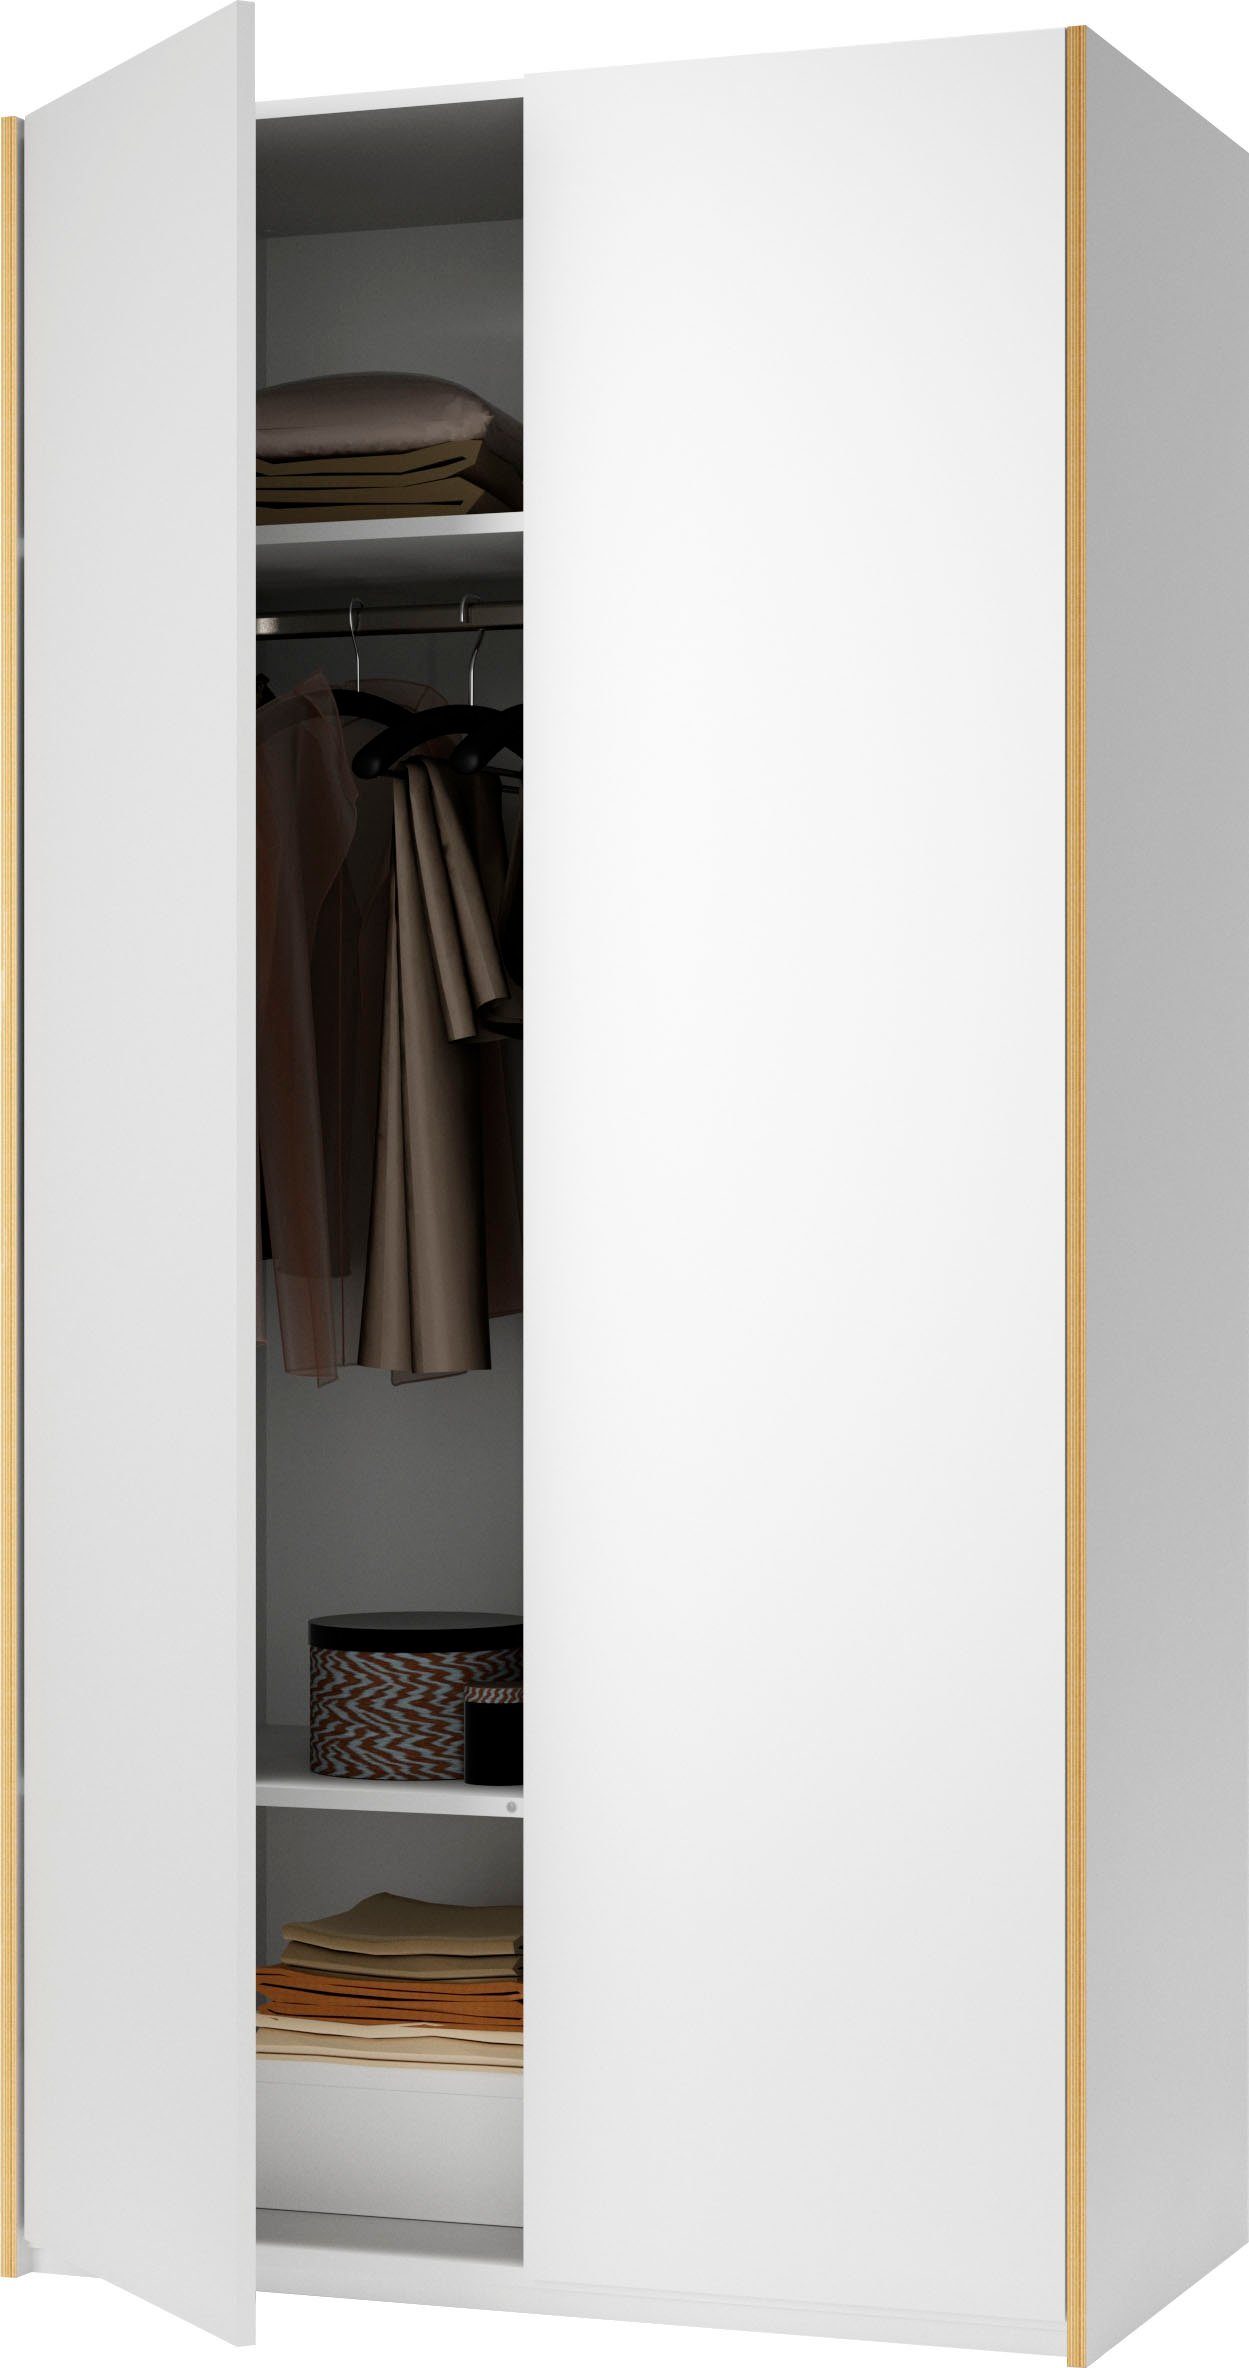 Plus einer durchgehende Müller LIVING 1 Fläche, Kleiderstange Variante Modular Kleiderschrank Innenraum | weiß/birke Im weiß/birke inklusive SMALL